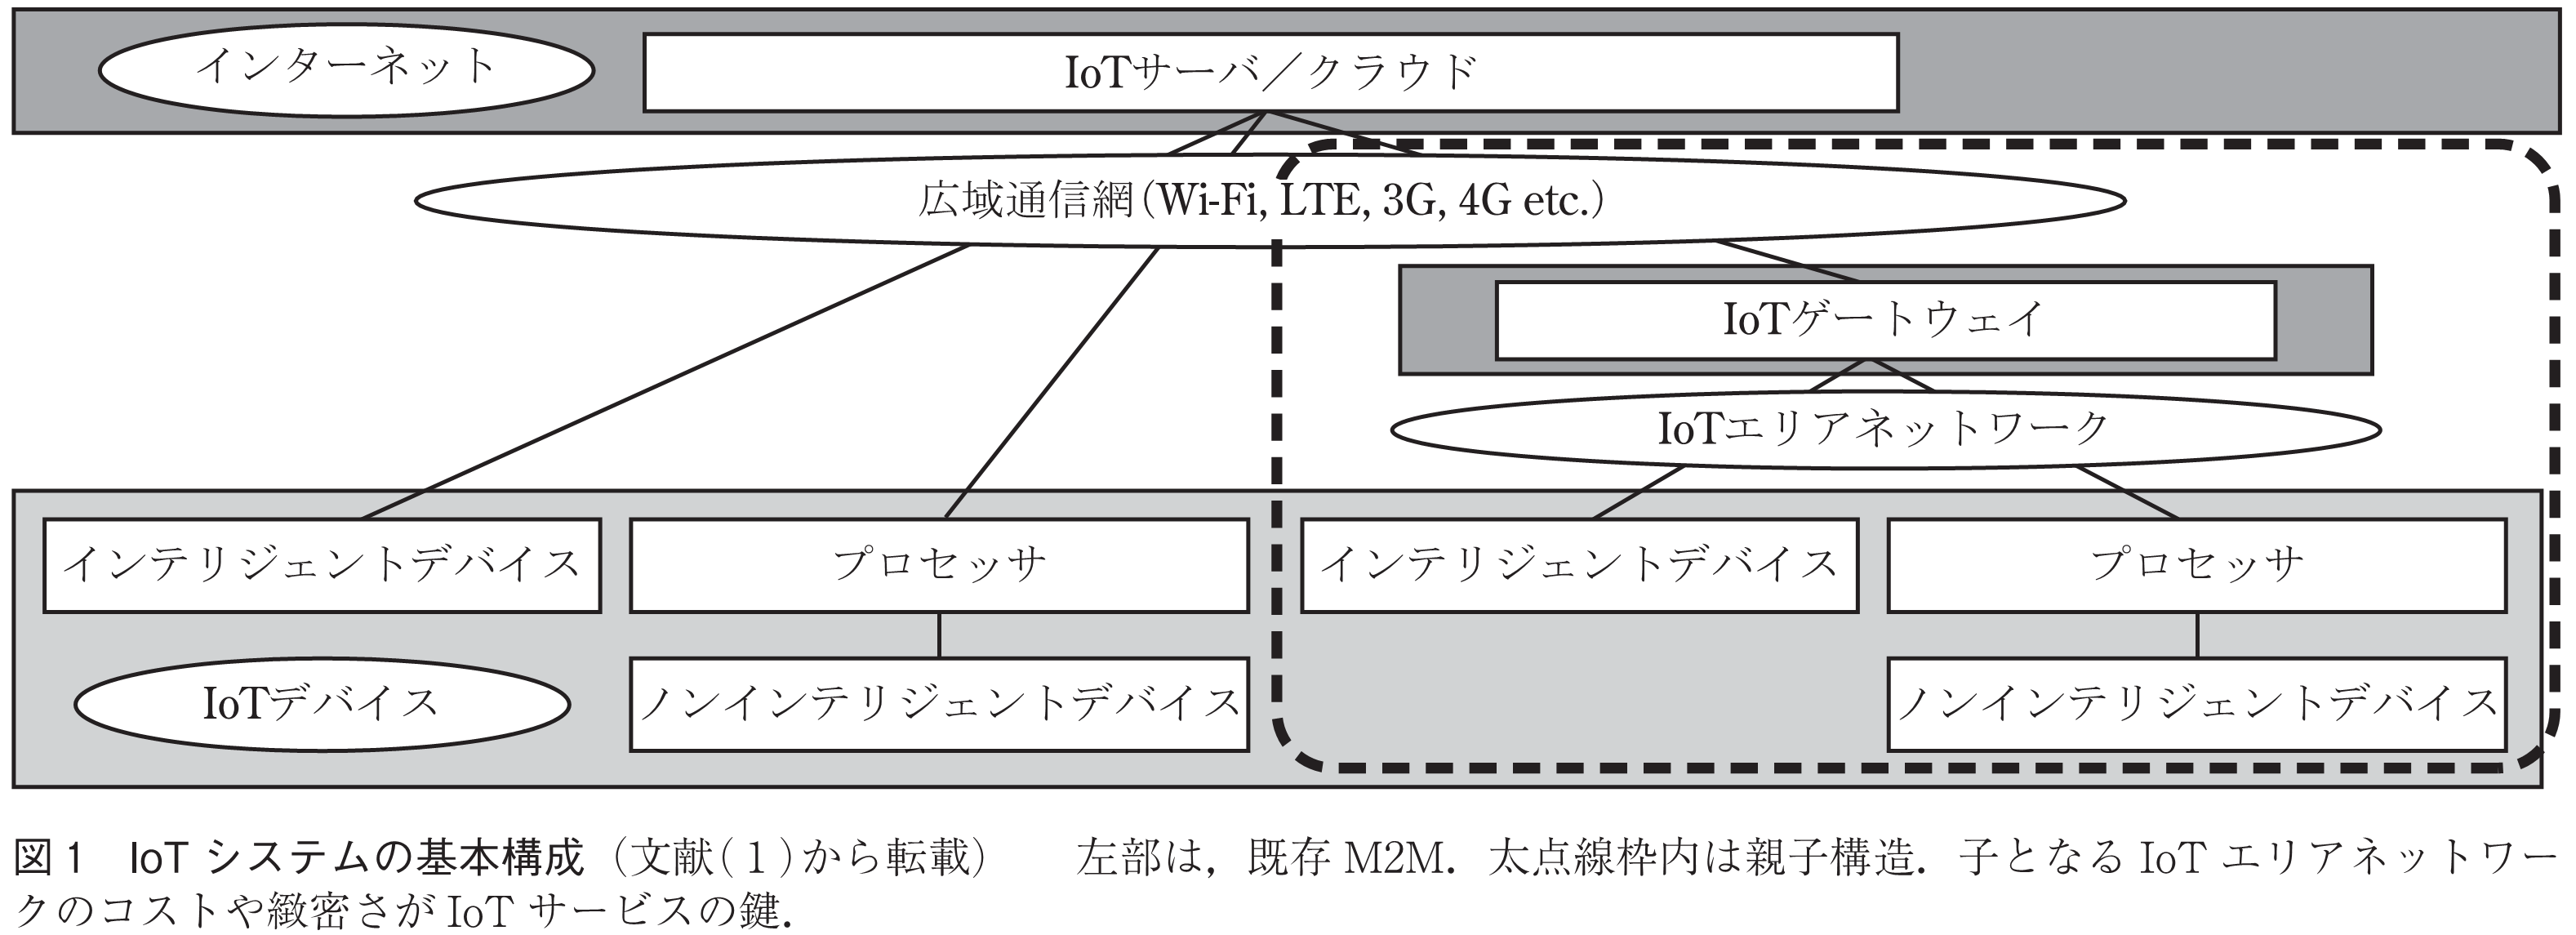 図1 IoT システムの基本構成